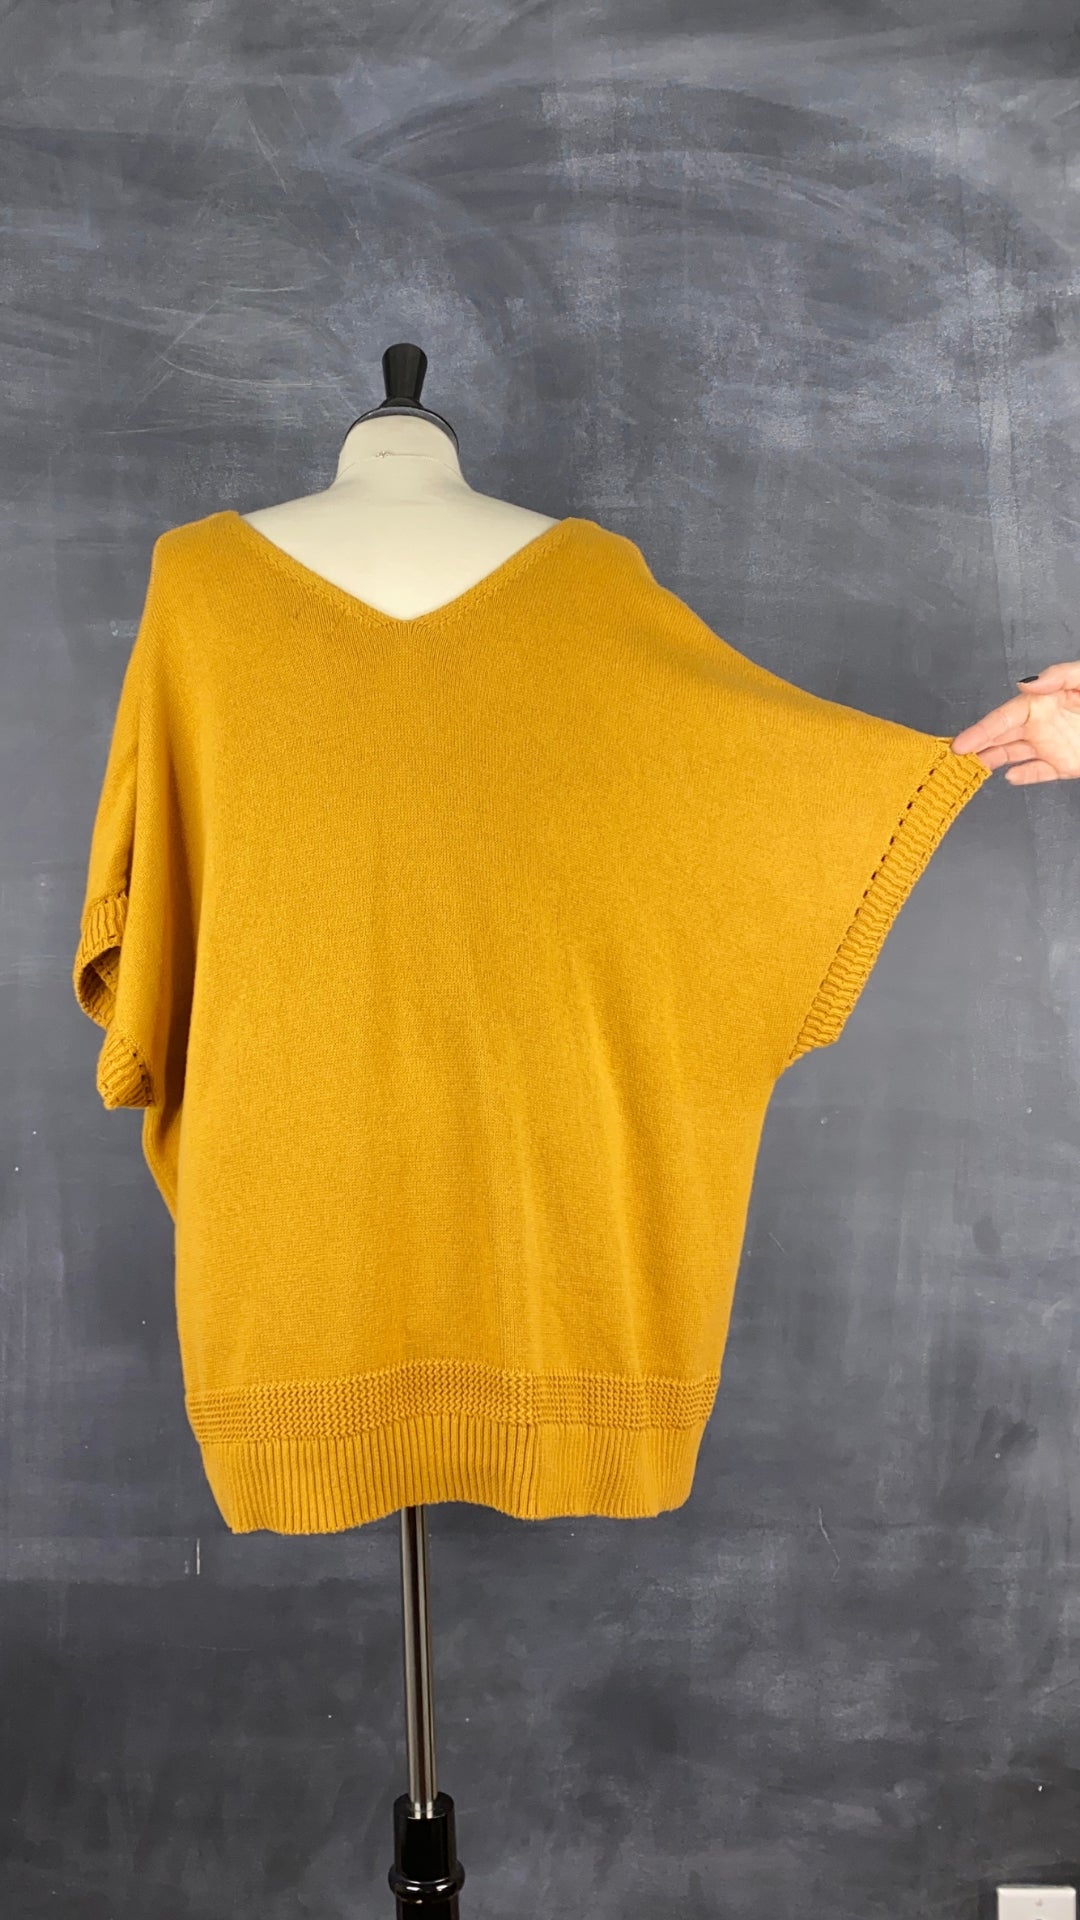 Chandail tricot manche cape ocre Joie, taille 3X. Vue de dos, manche relevée.